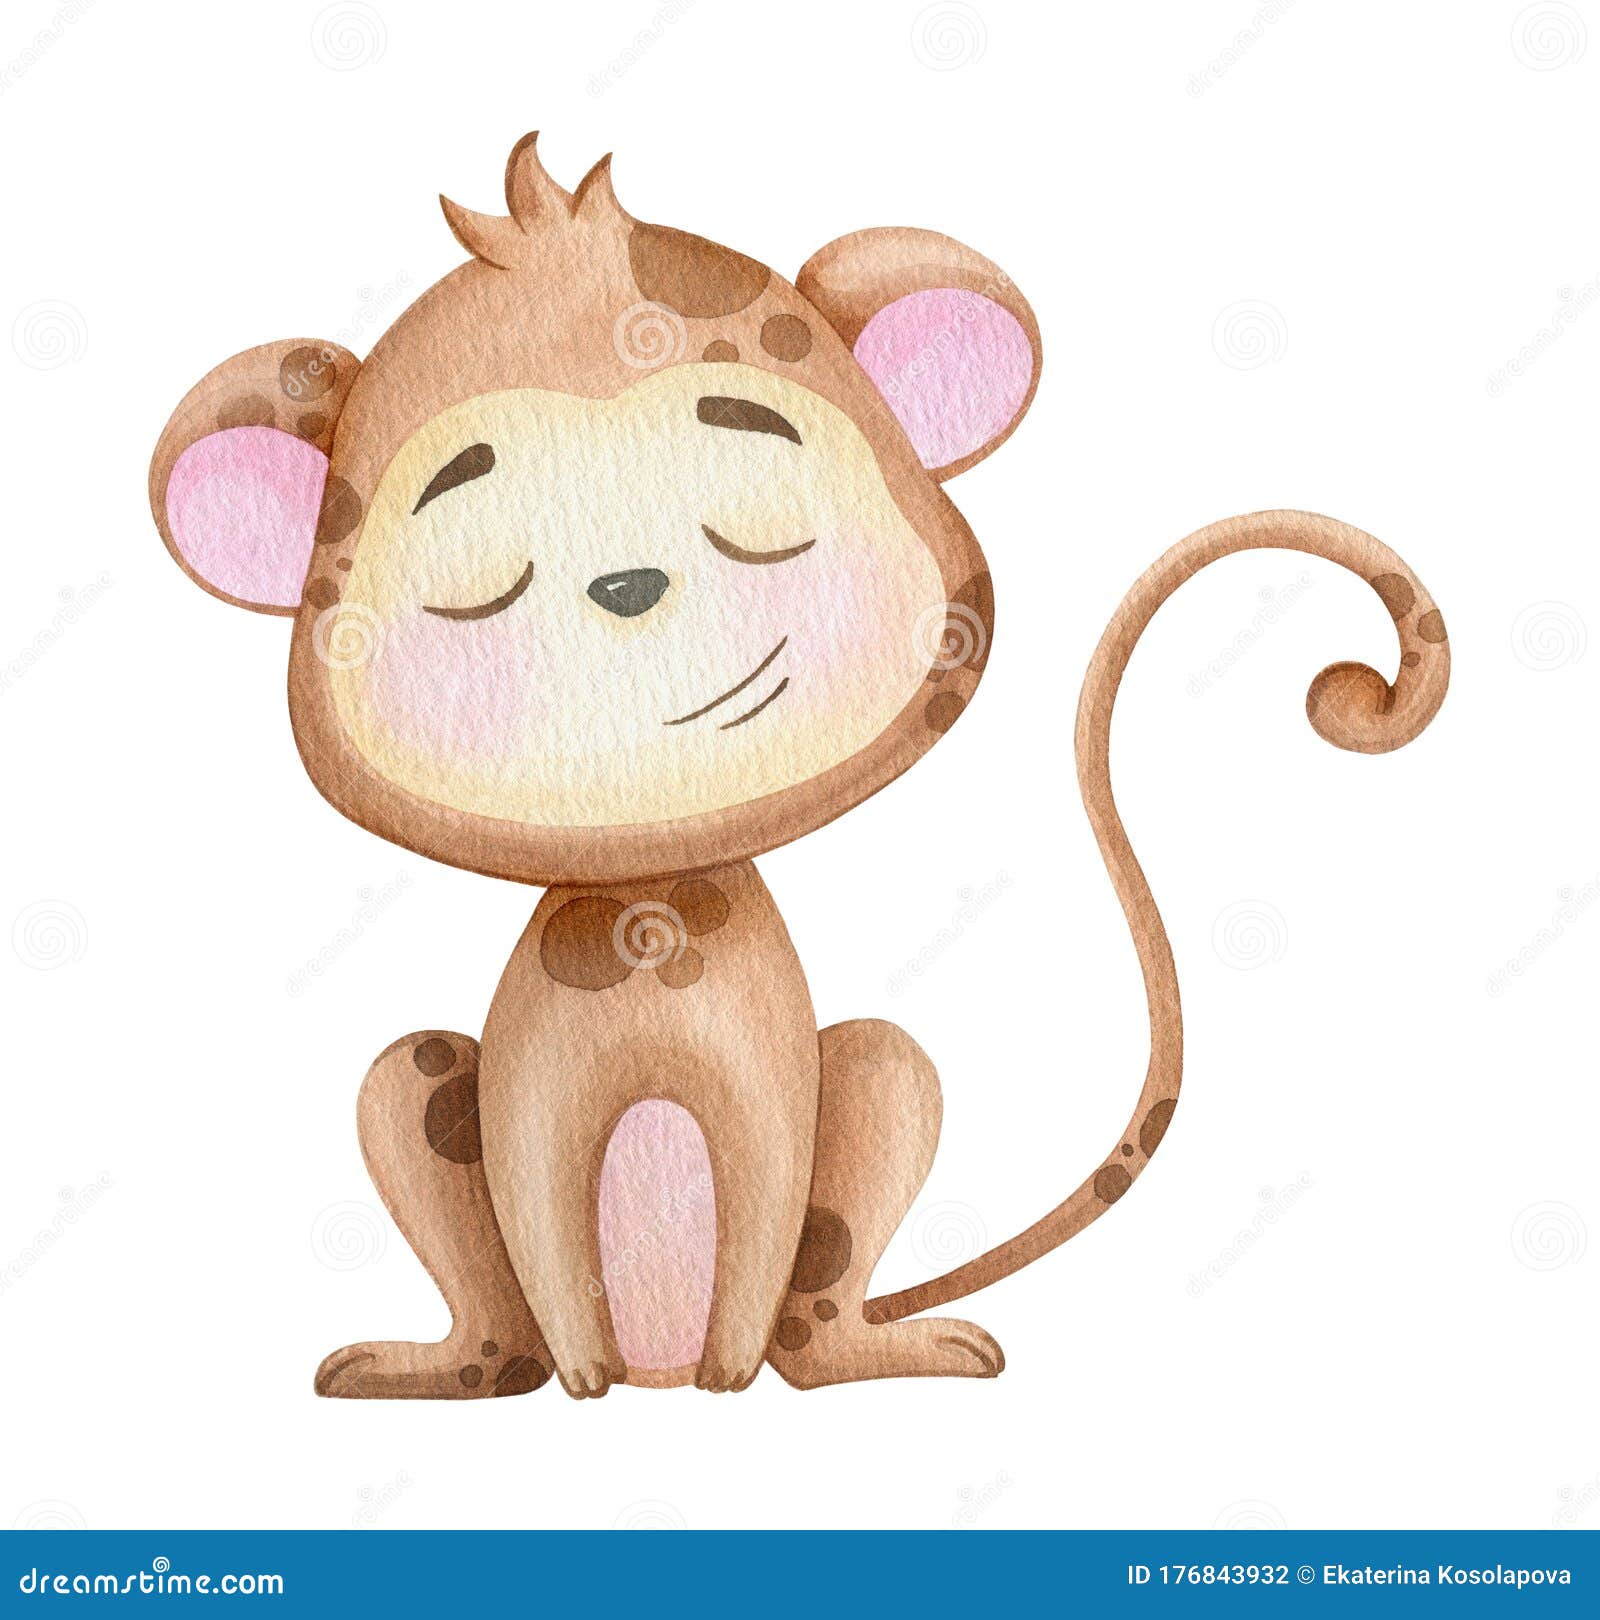 Ilustração De Aquarela De Macacos Fofos Para Impressão Em Crianças  Ilustração Stock - Ilustração de isolado, nave: 176843932